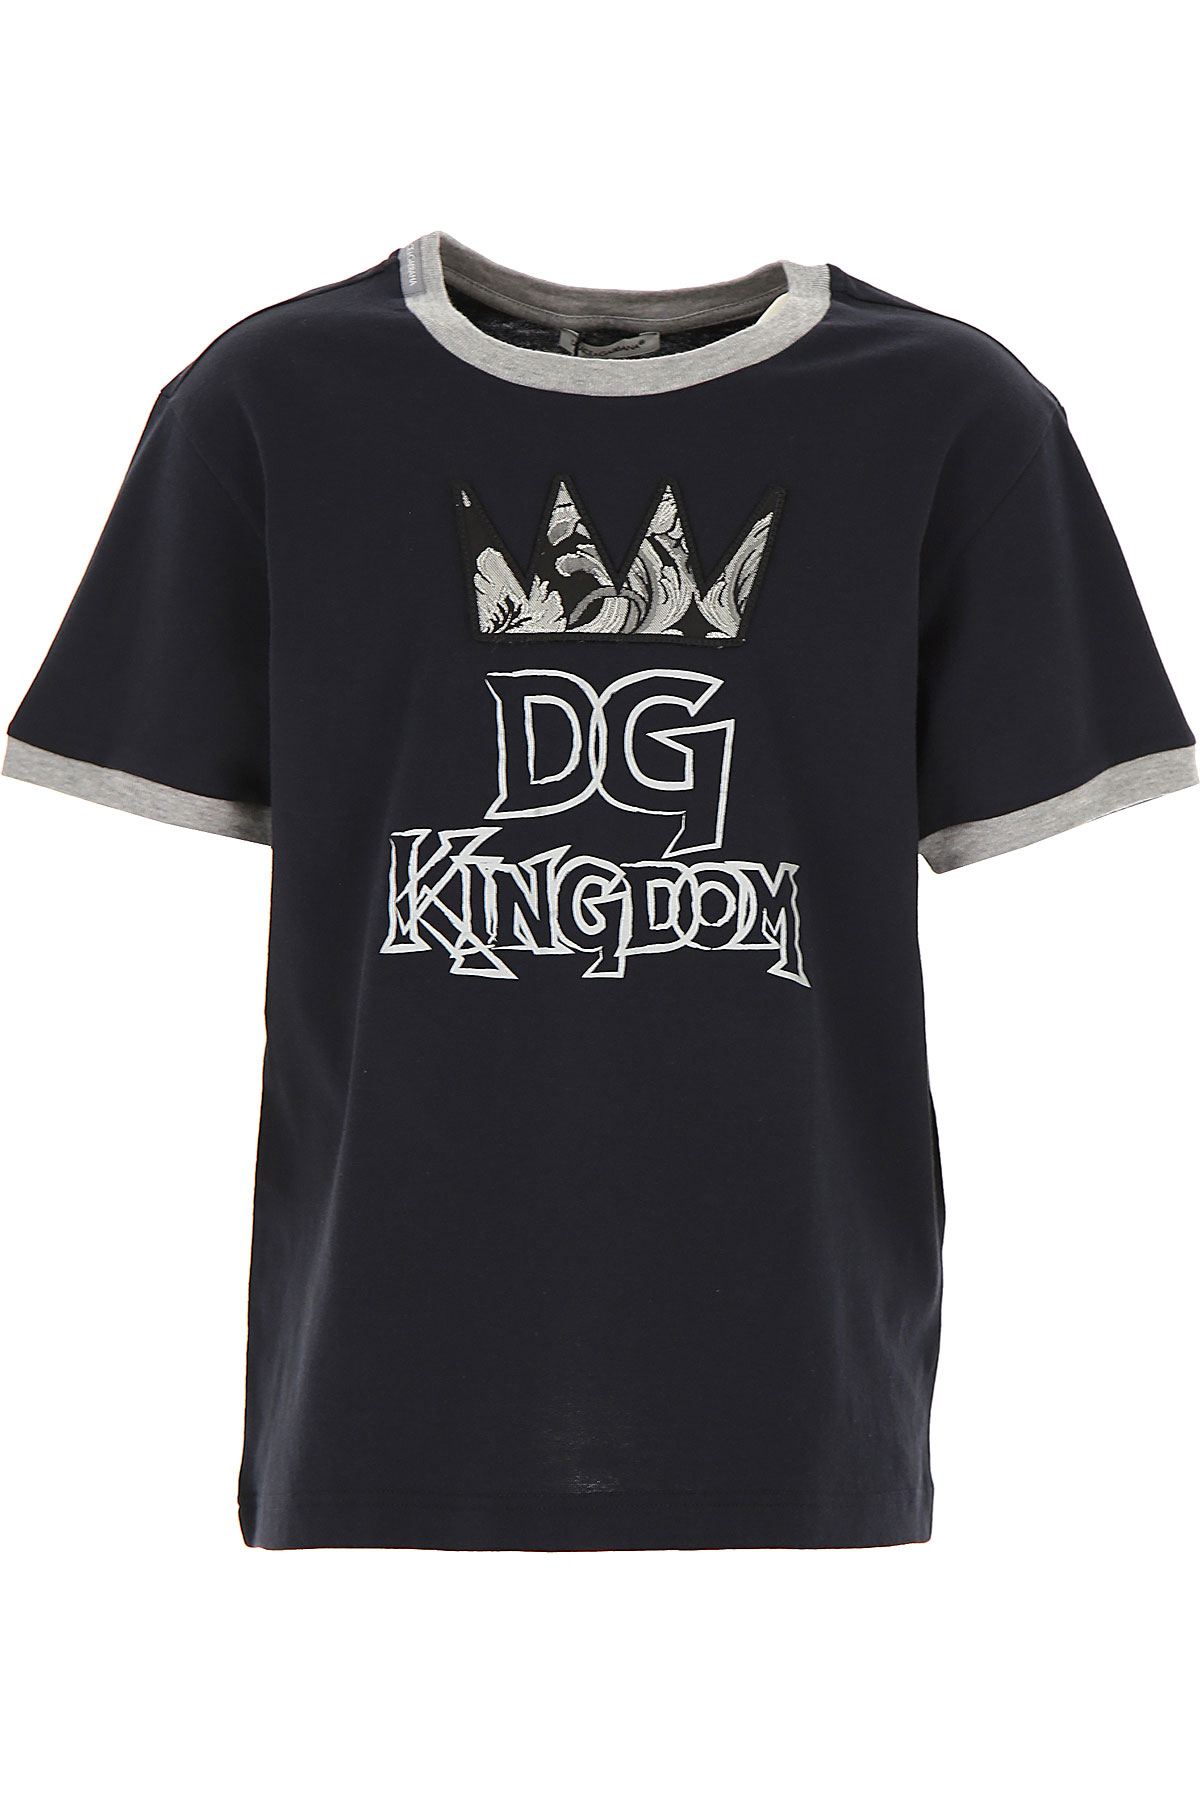 Dolce & Gabbana Kinder T-Shirt für Jungen Günstig im Sale, Dunkelblau, Baumwolle, 2017, 10Y 4Y 6Y 8Y